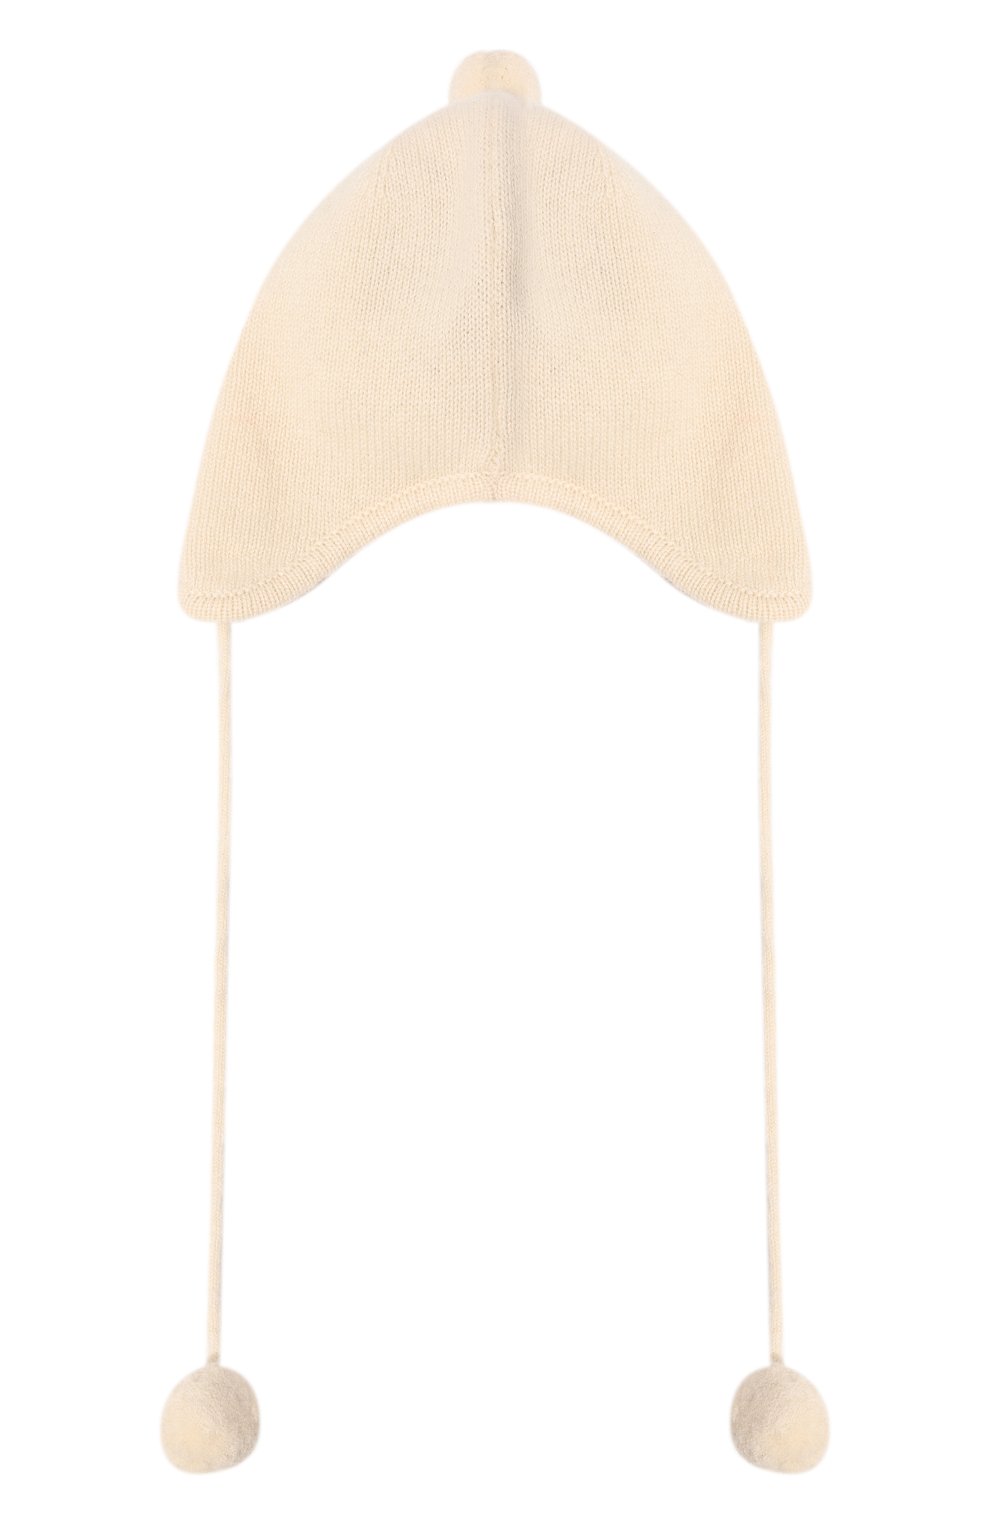 Детского кашемировая шапка OSCAR ET VALENTINE кремвого цвета, арт. BON0122 | Фото 2 (Материал: Текстиль, Кашемир, Шерсть)